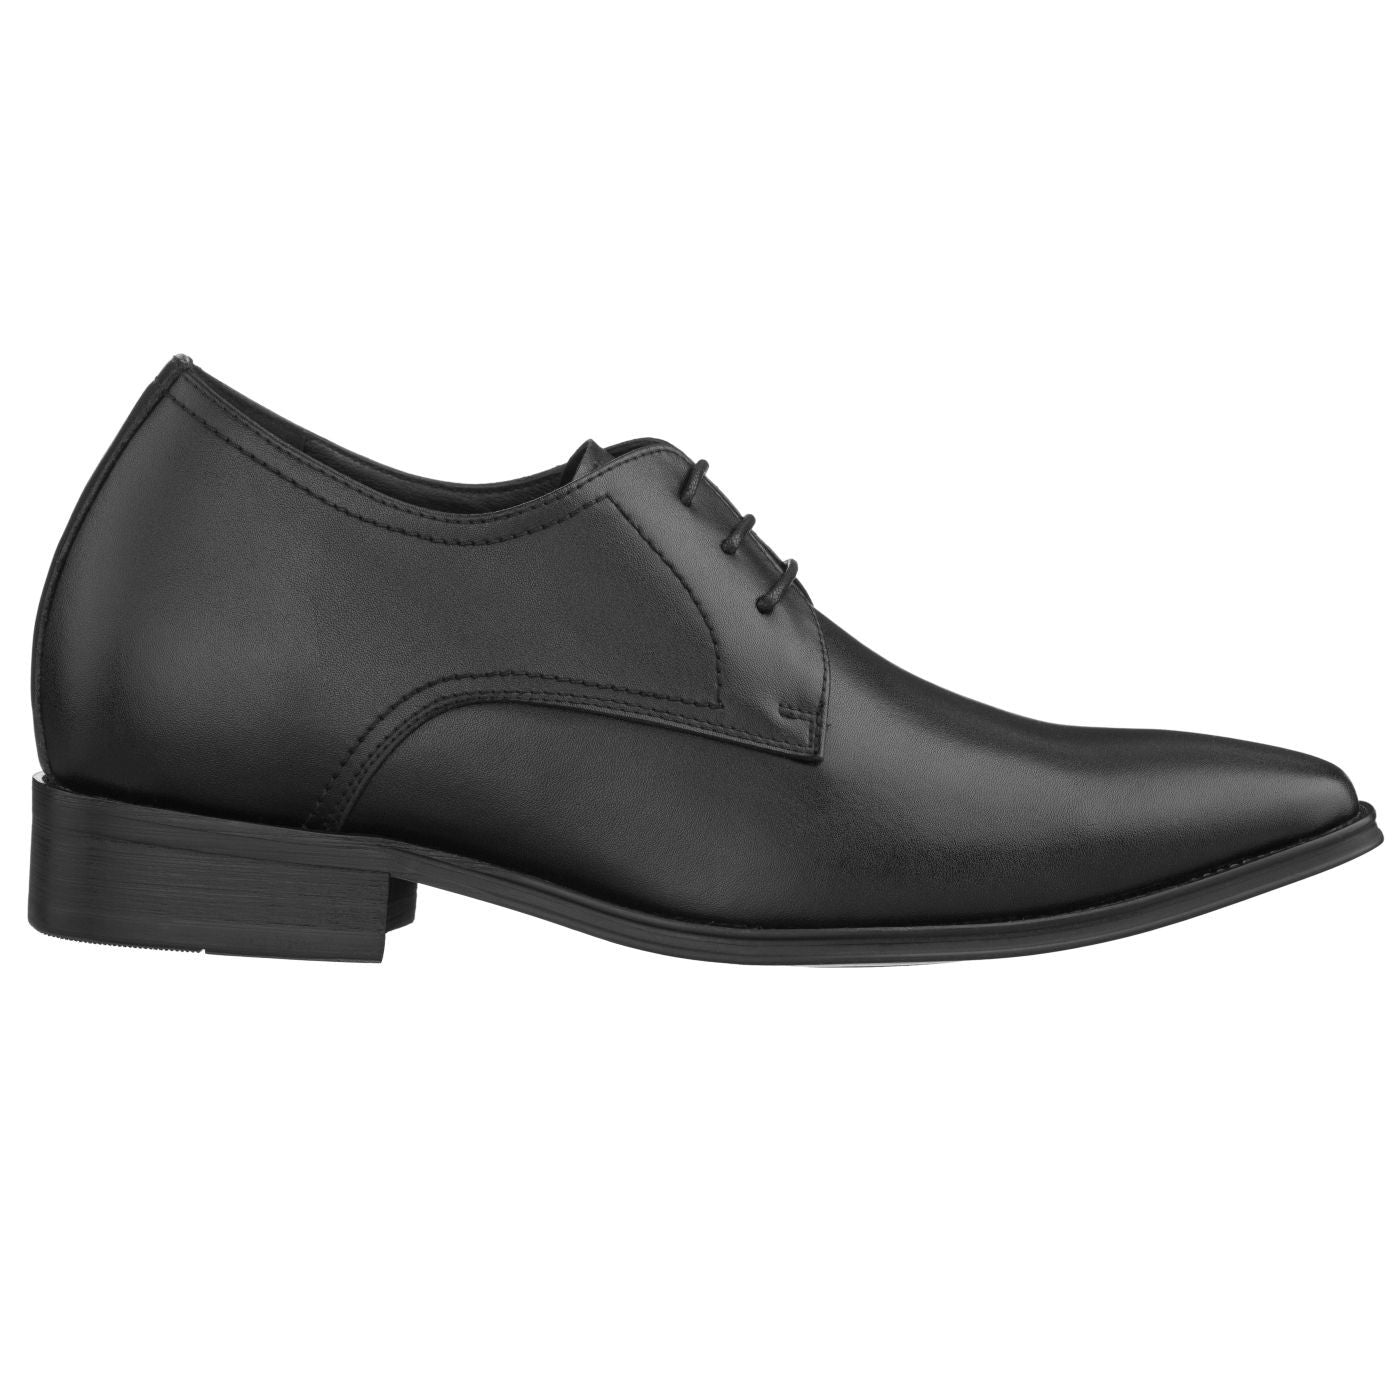 CALTO Black Leather Dress Shoes - TallMenShoes.com – Tallmenshoes.com